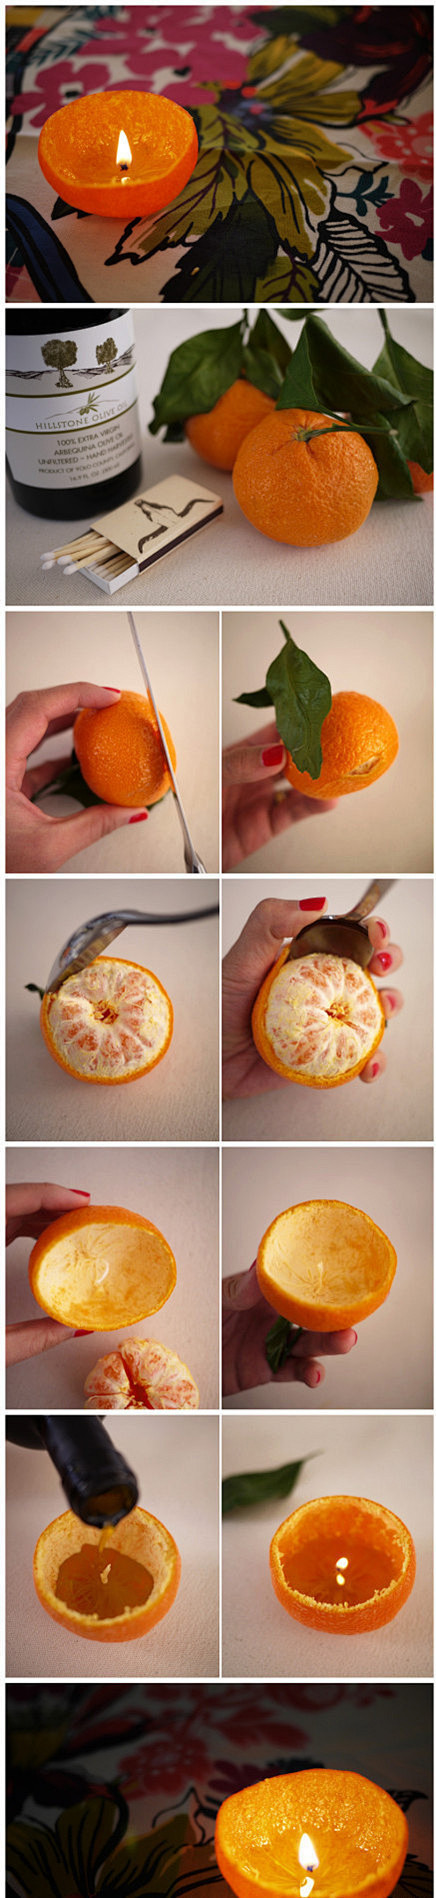 之所以叫做小橘灯，是因为用橙皮或者柑橘皮...